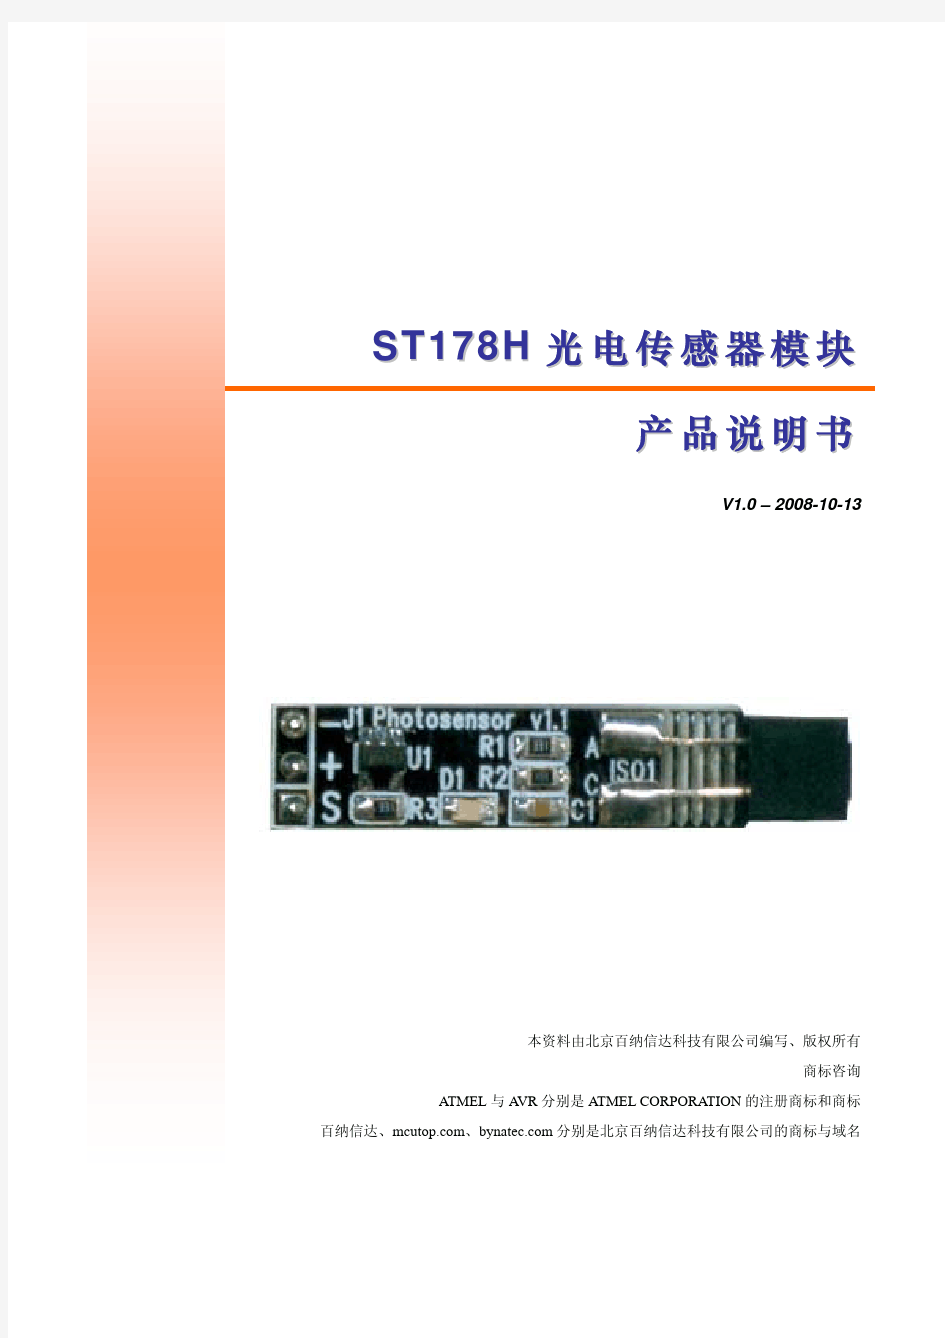 ST178H红外光电传感器模块产品说明书